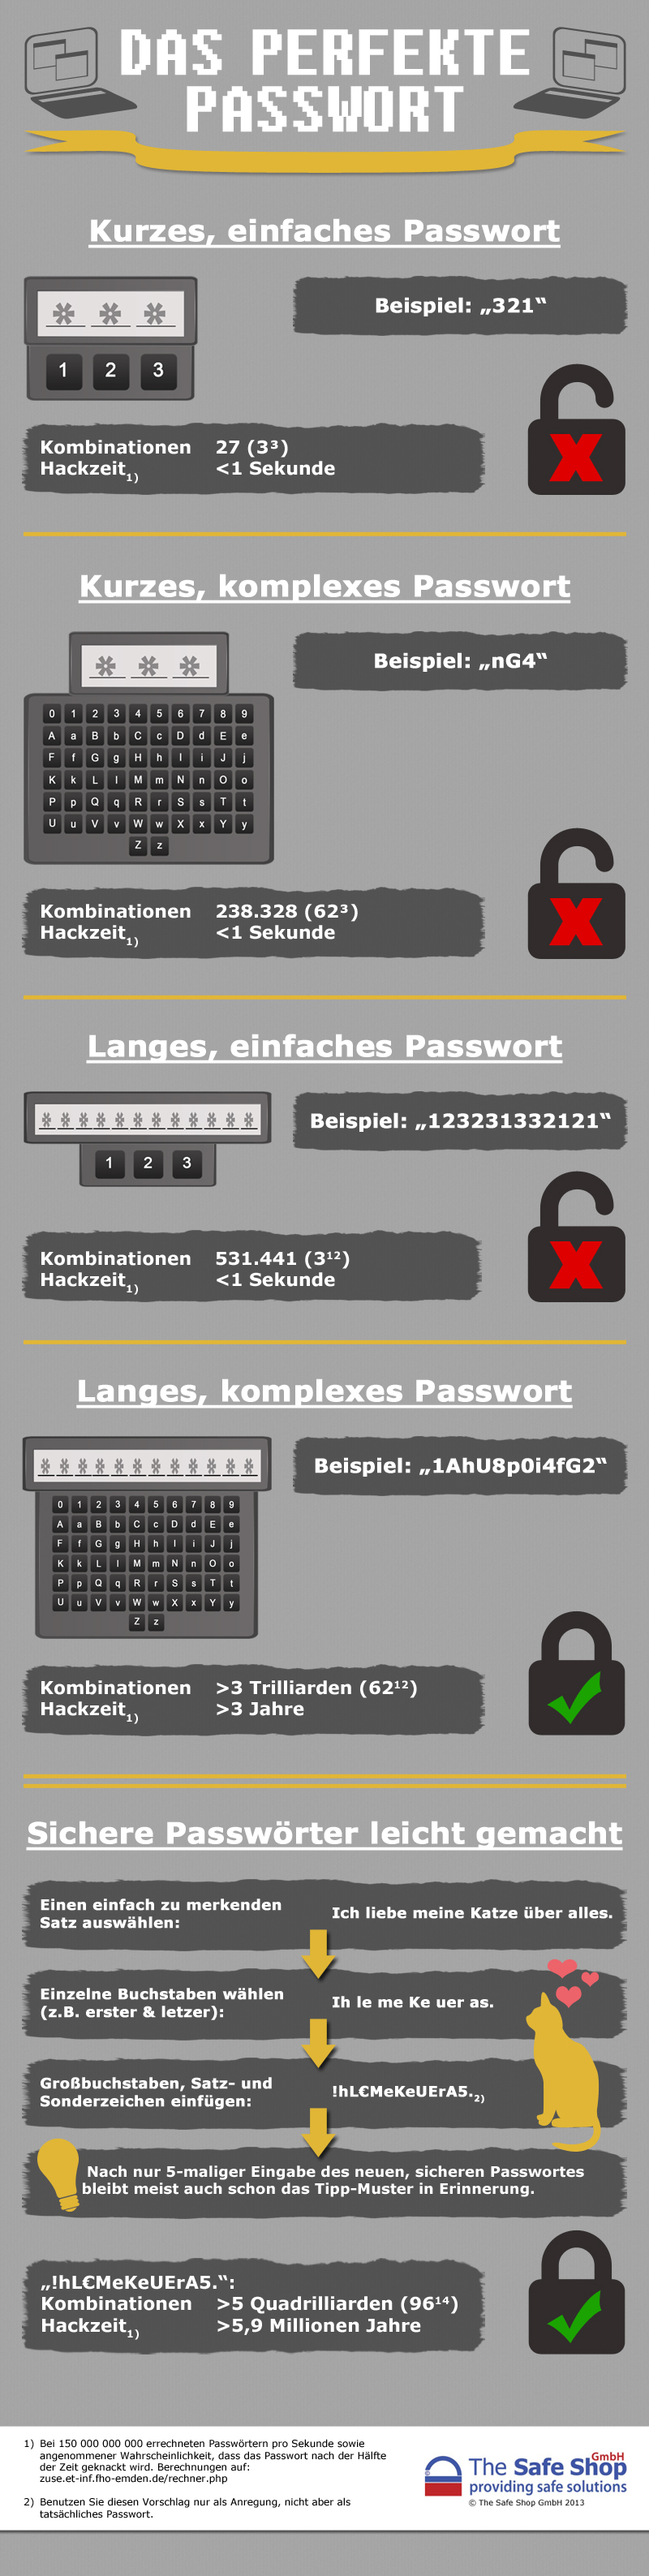 Hackangriff